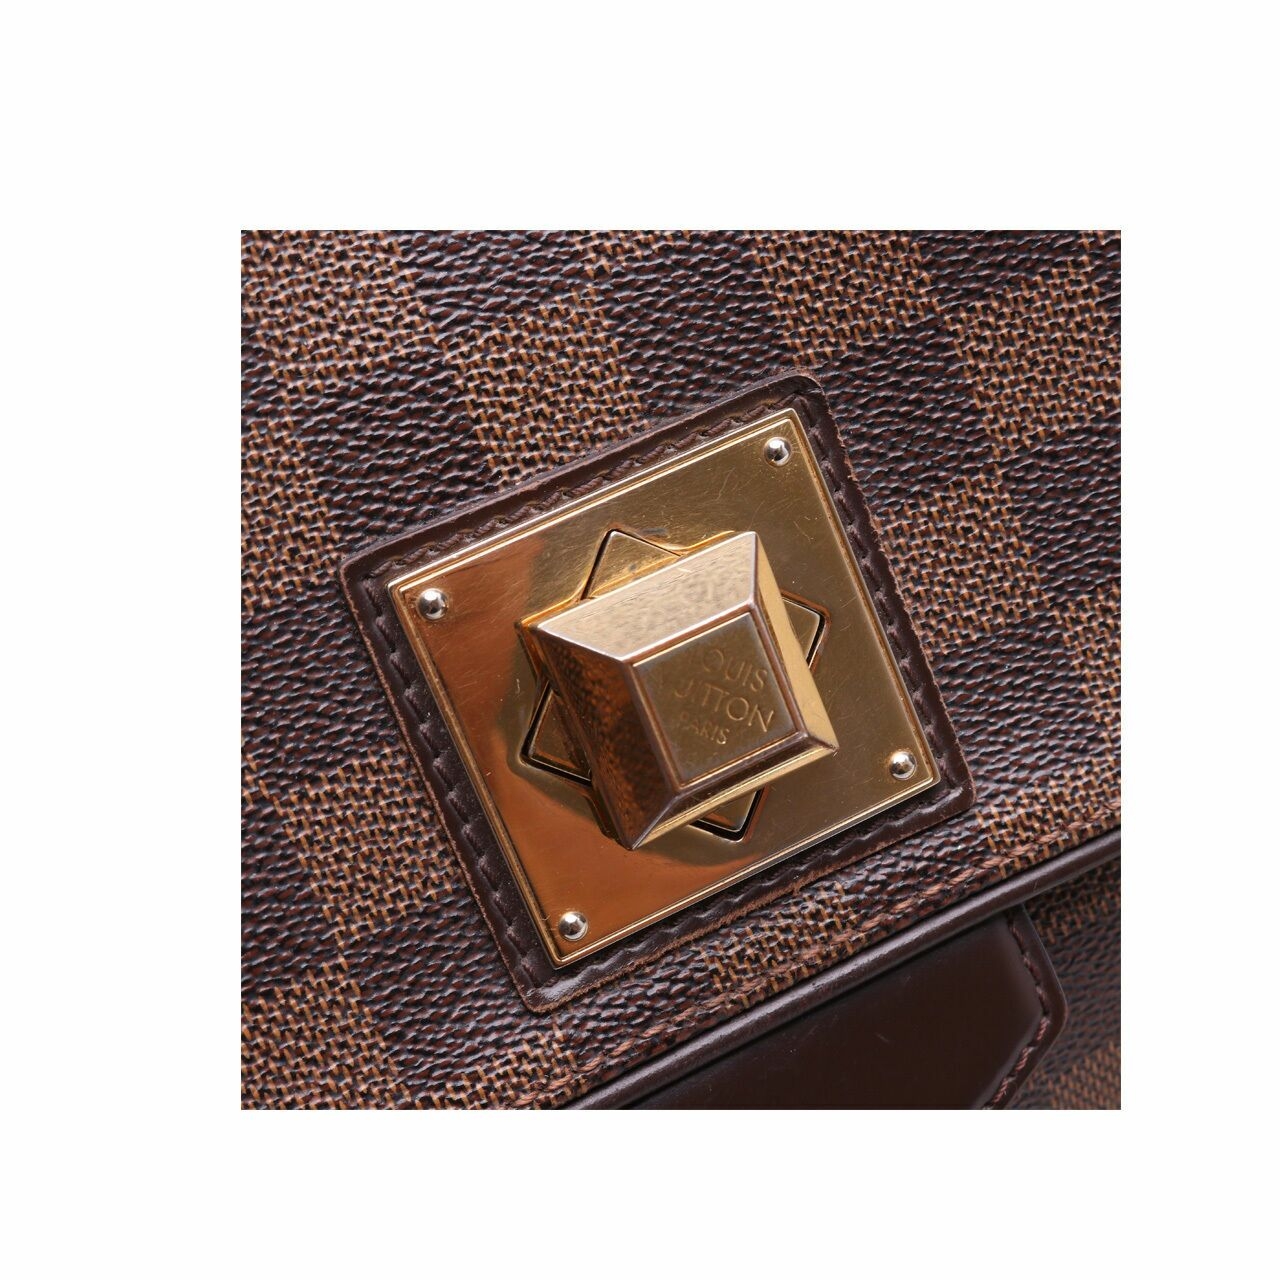 Louis Vuitton Bergamo Damier Canvas Brown GM Satchel Bag